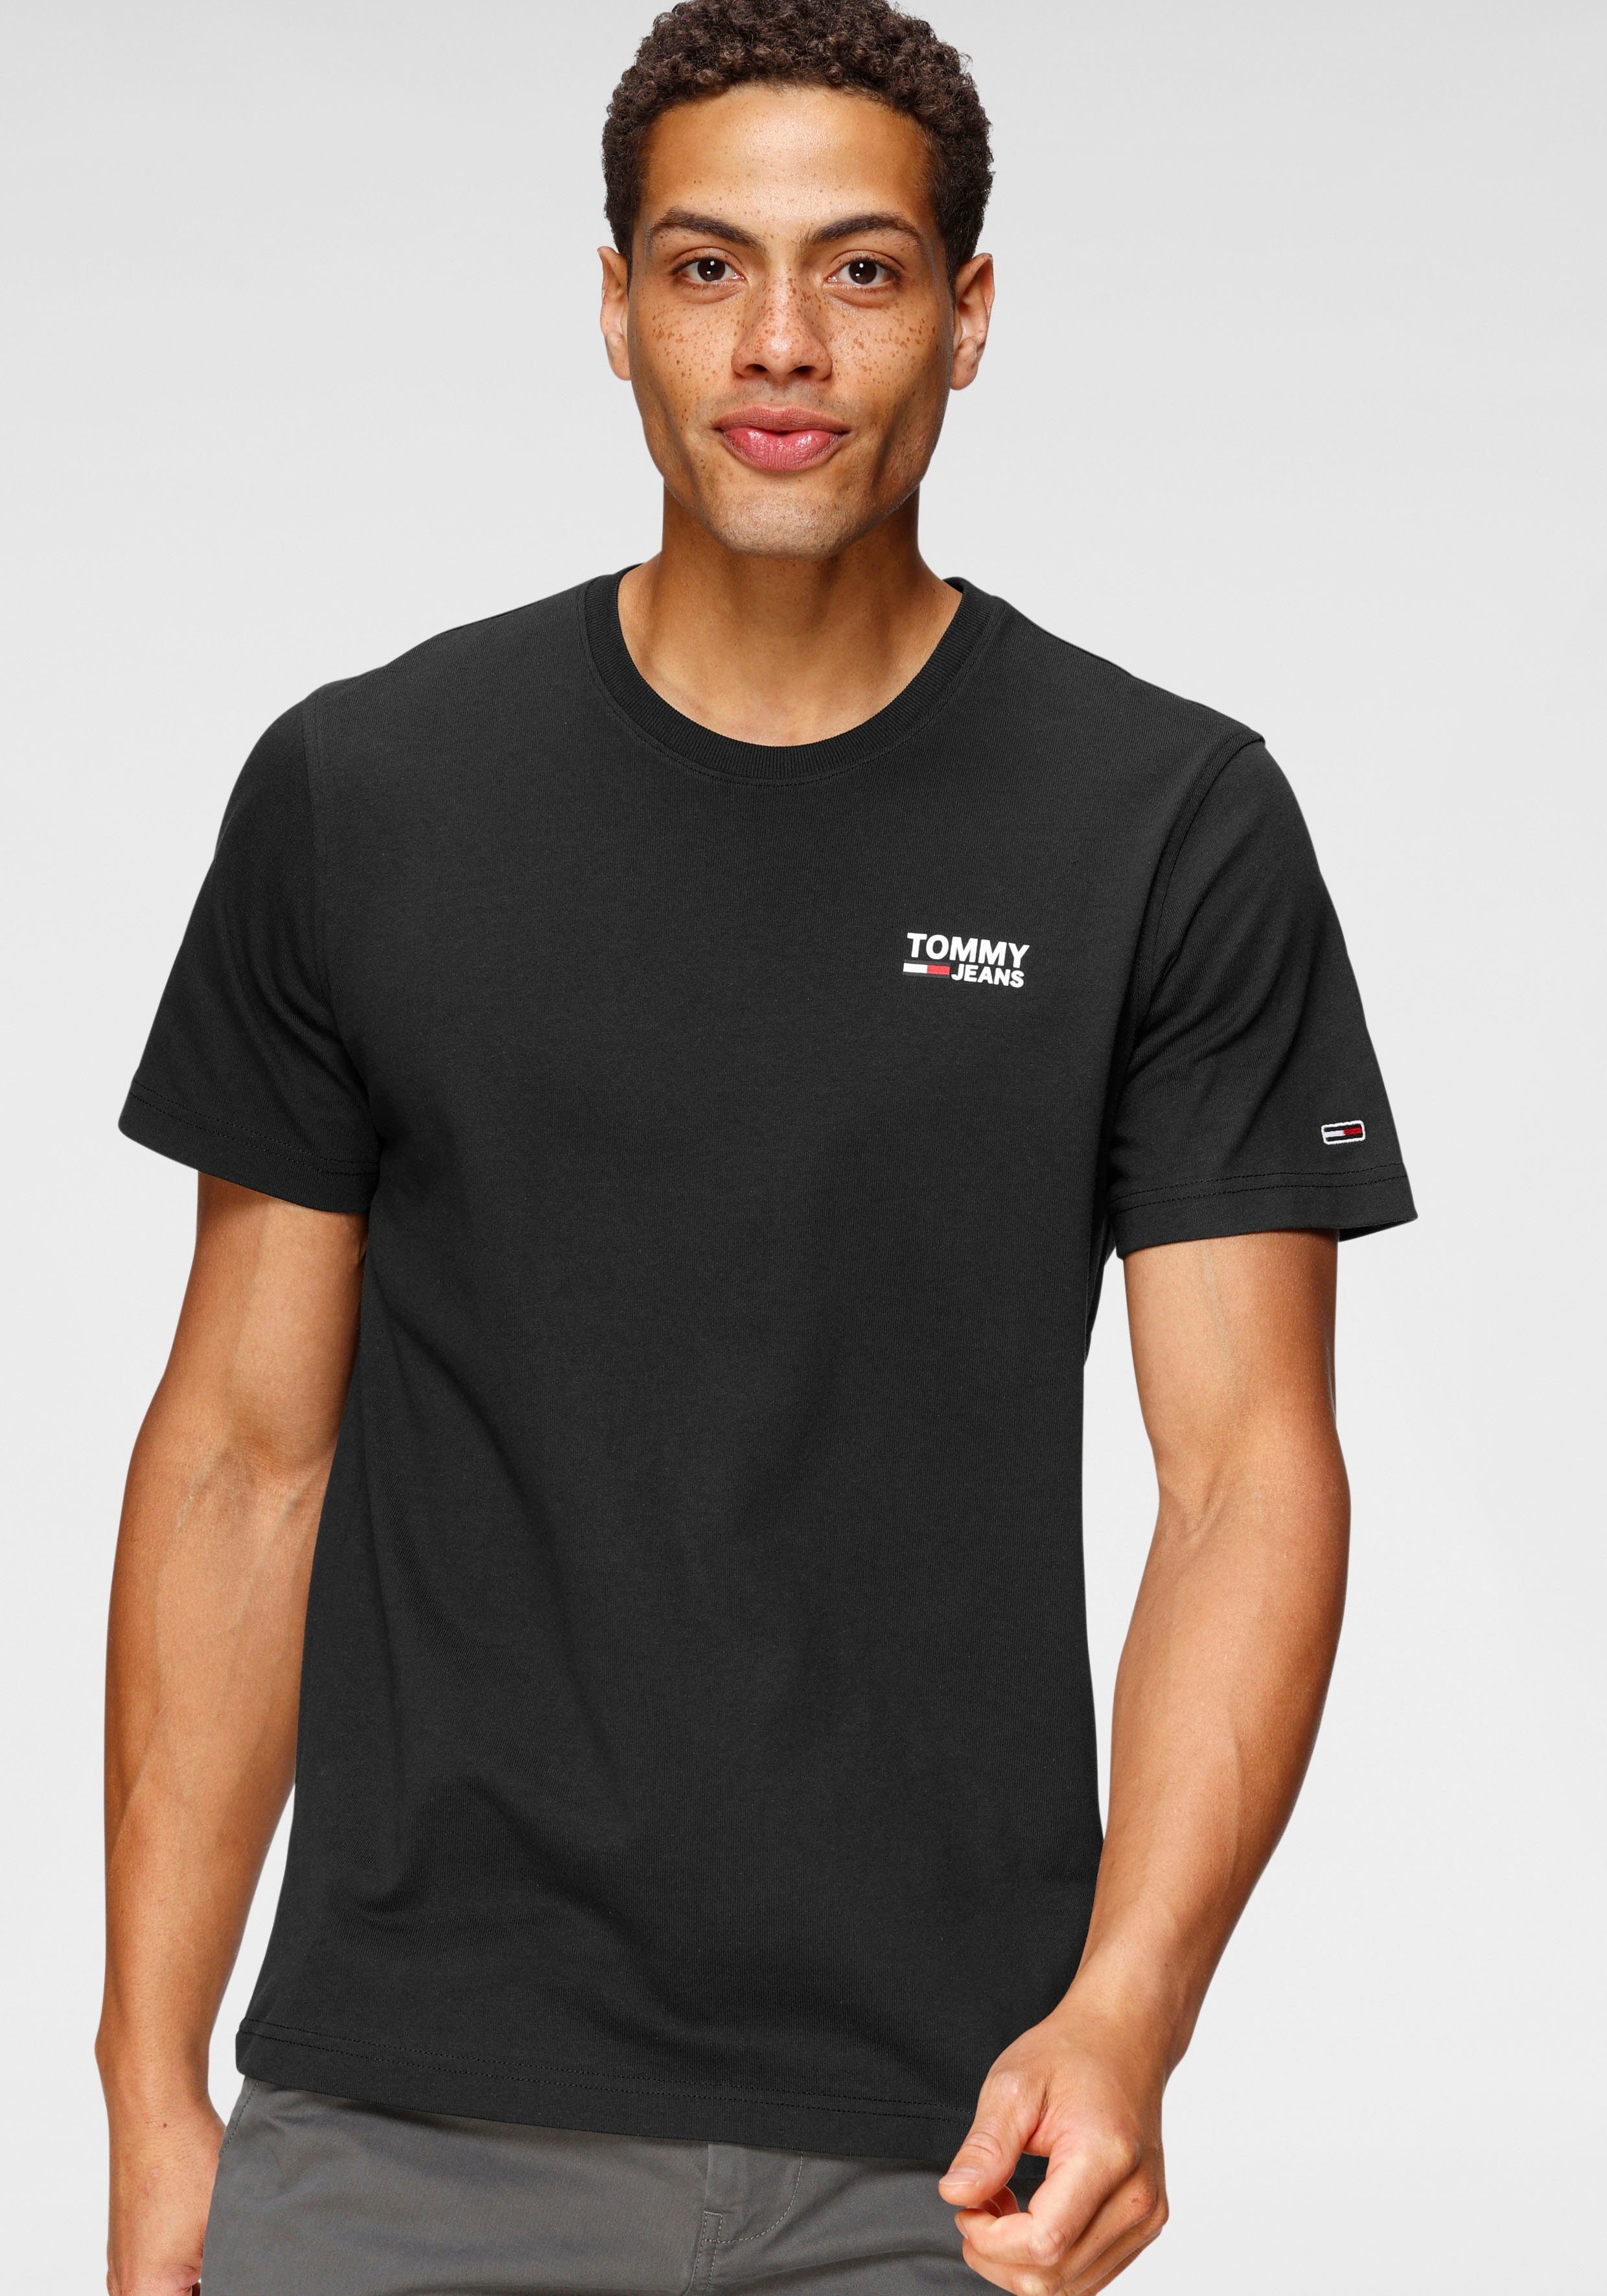 Schwarzes Herren-Shirt online kaufen | OTTO